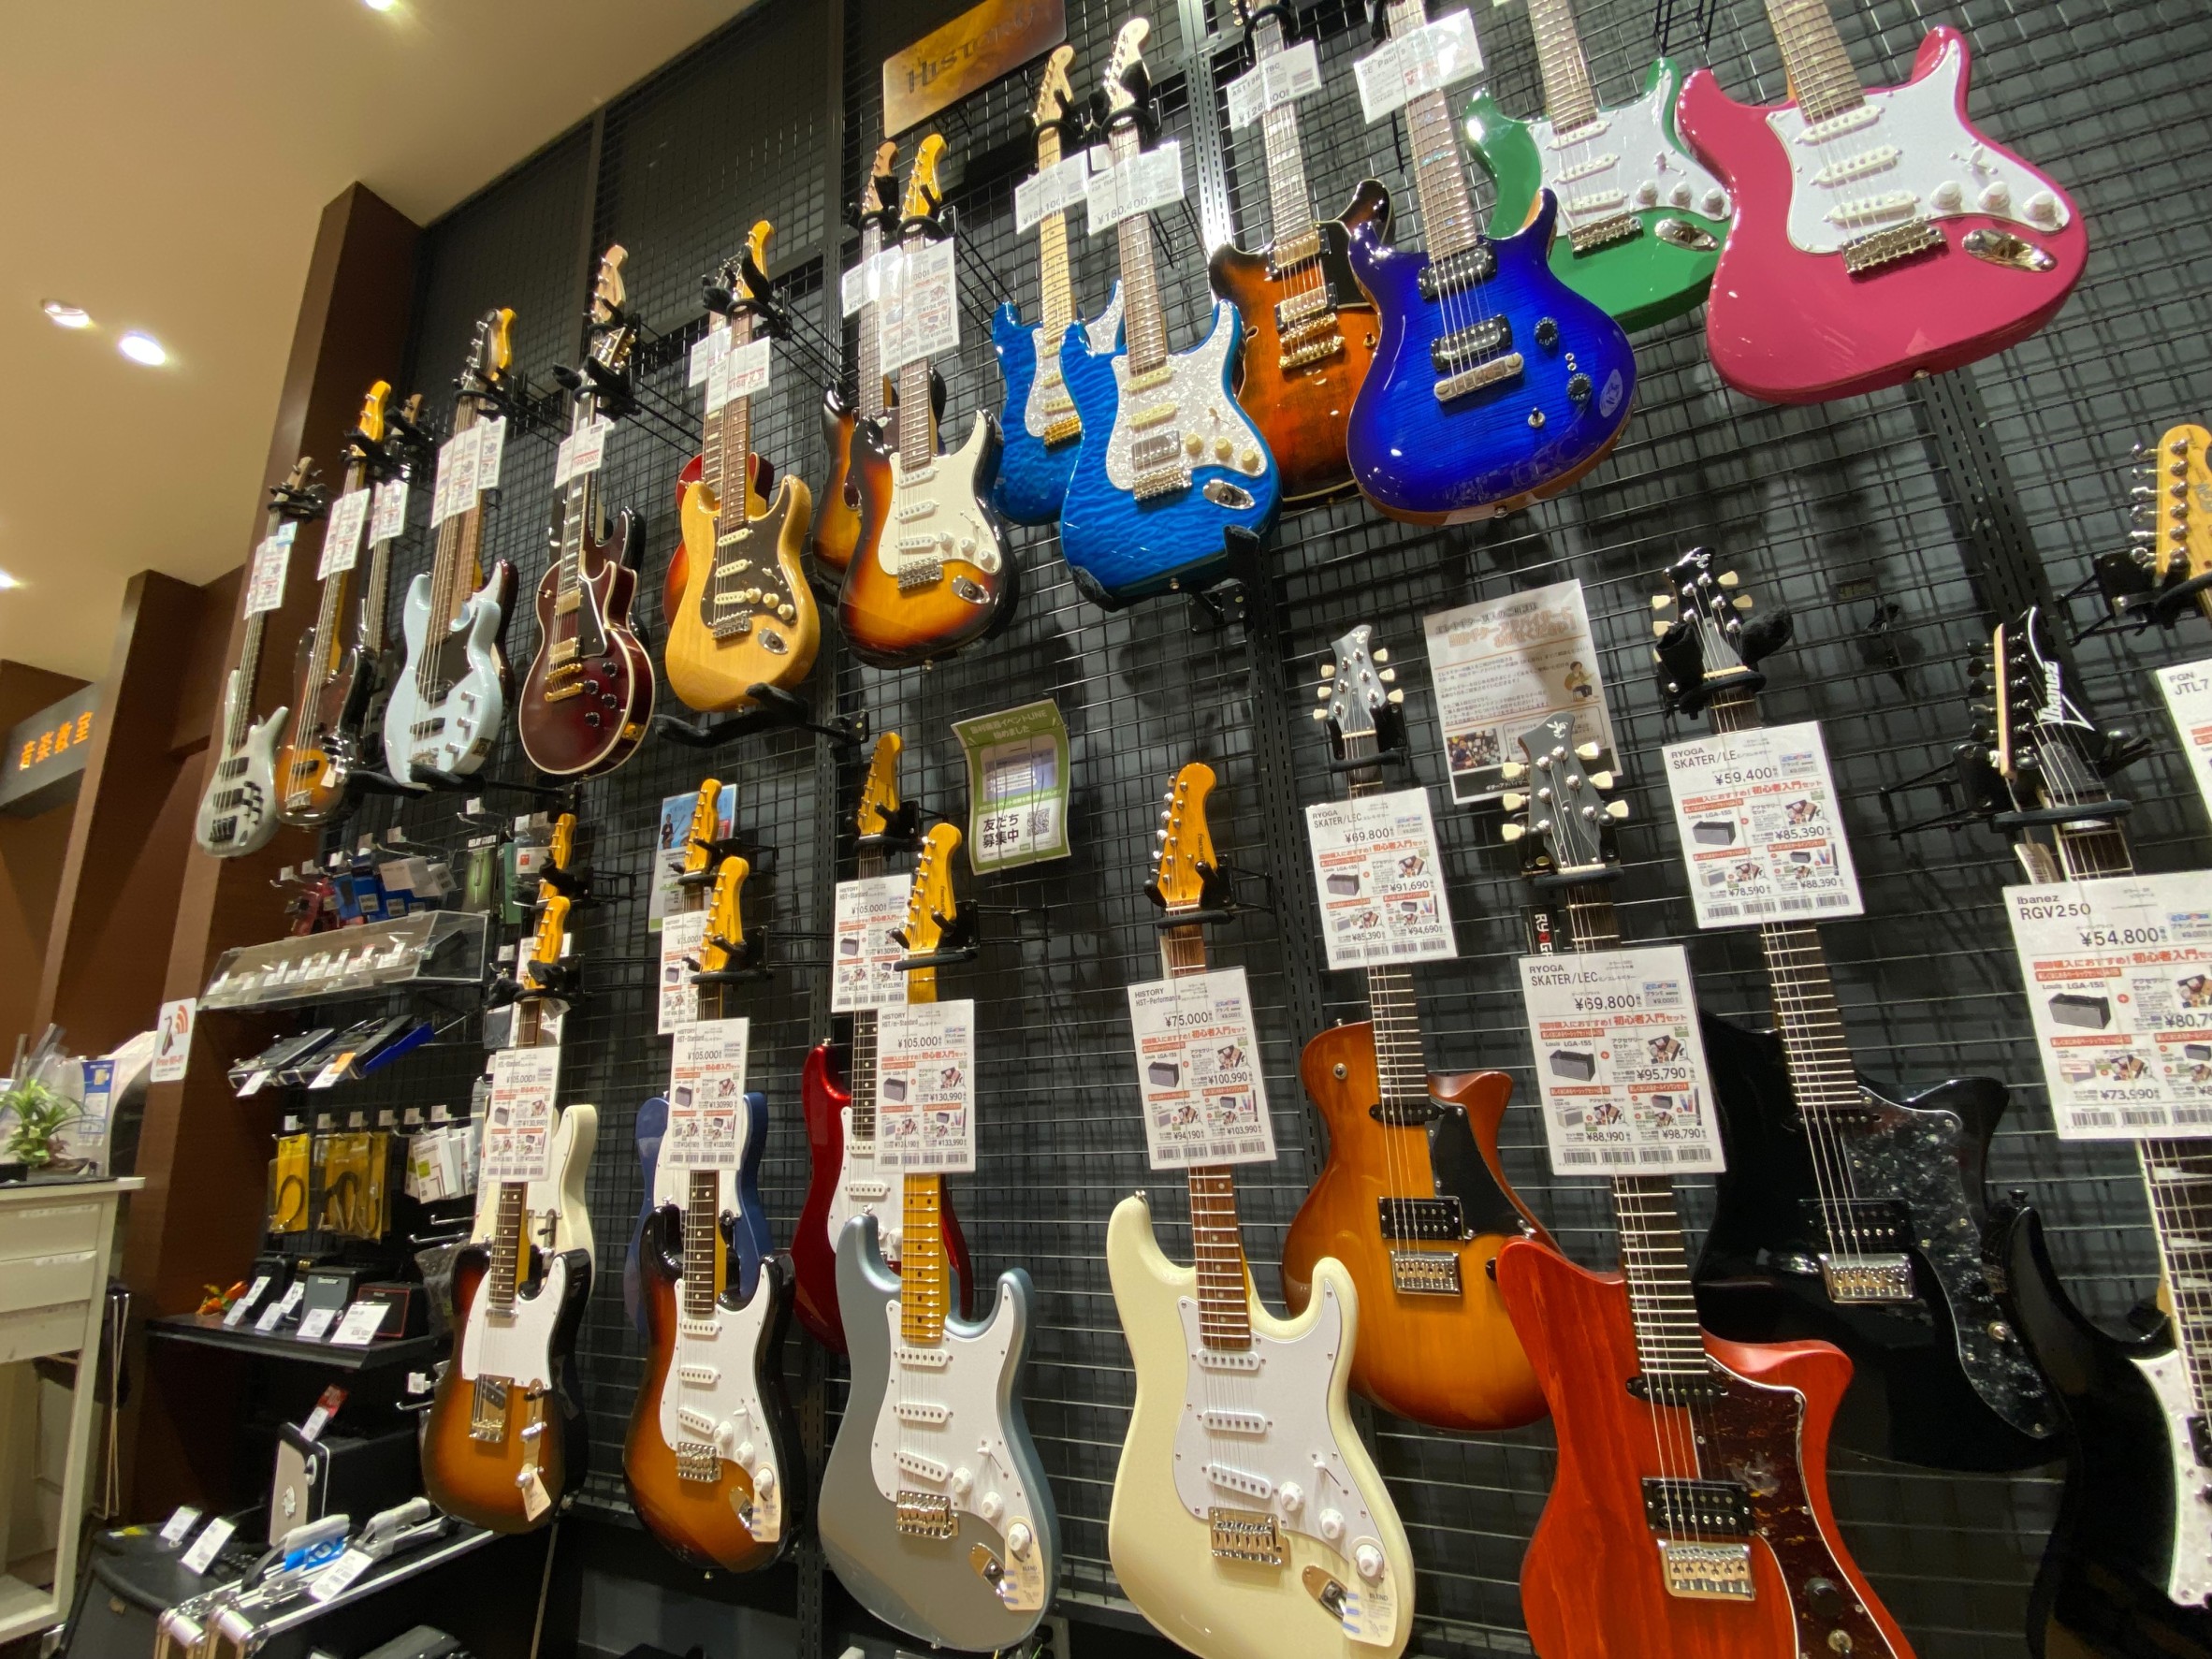 CONTENTSはじめてのエレキギター選びはららぽーと豊洲店にお任せください！オンラインストアでも買える！オススメエレキギター紹介！はじめてのエレキギター選びはららぽーと豊洲店にお任せください！ ららぽーと豊洲店では初心者さん向けのエレキギターの取扱いを強化しております！お求めやすい価格のギターから […]